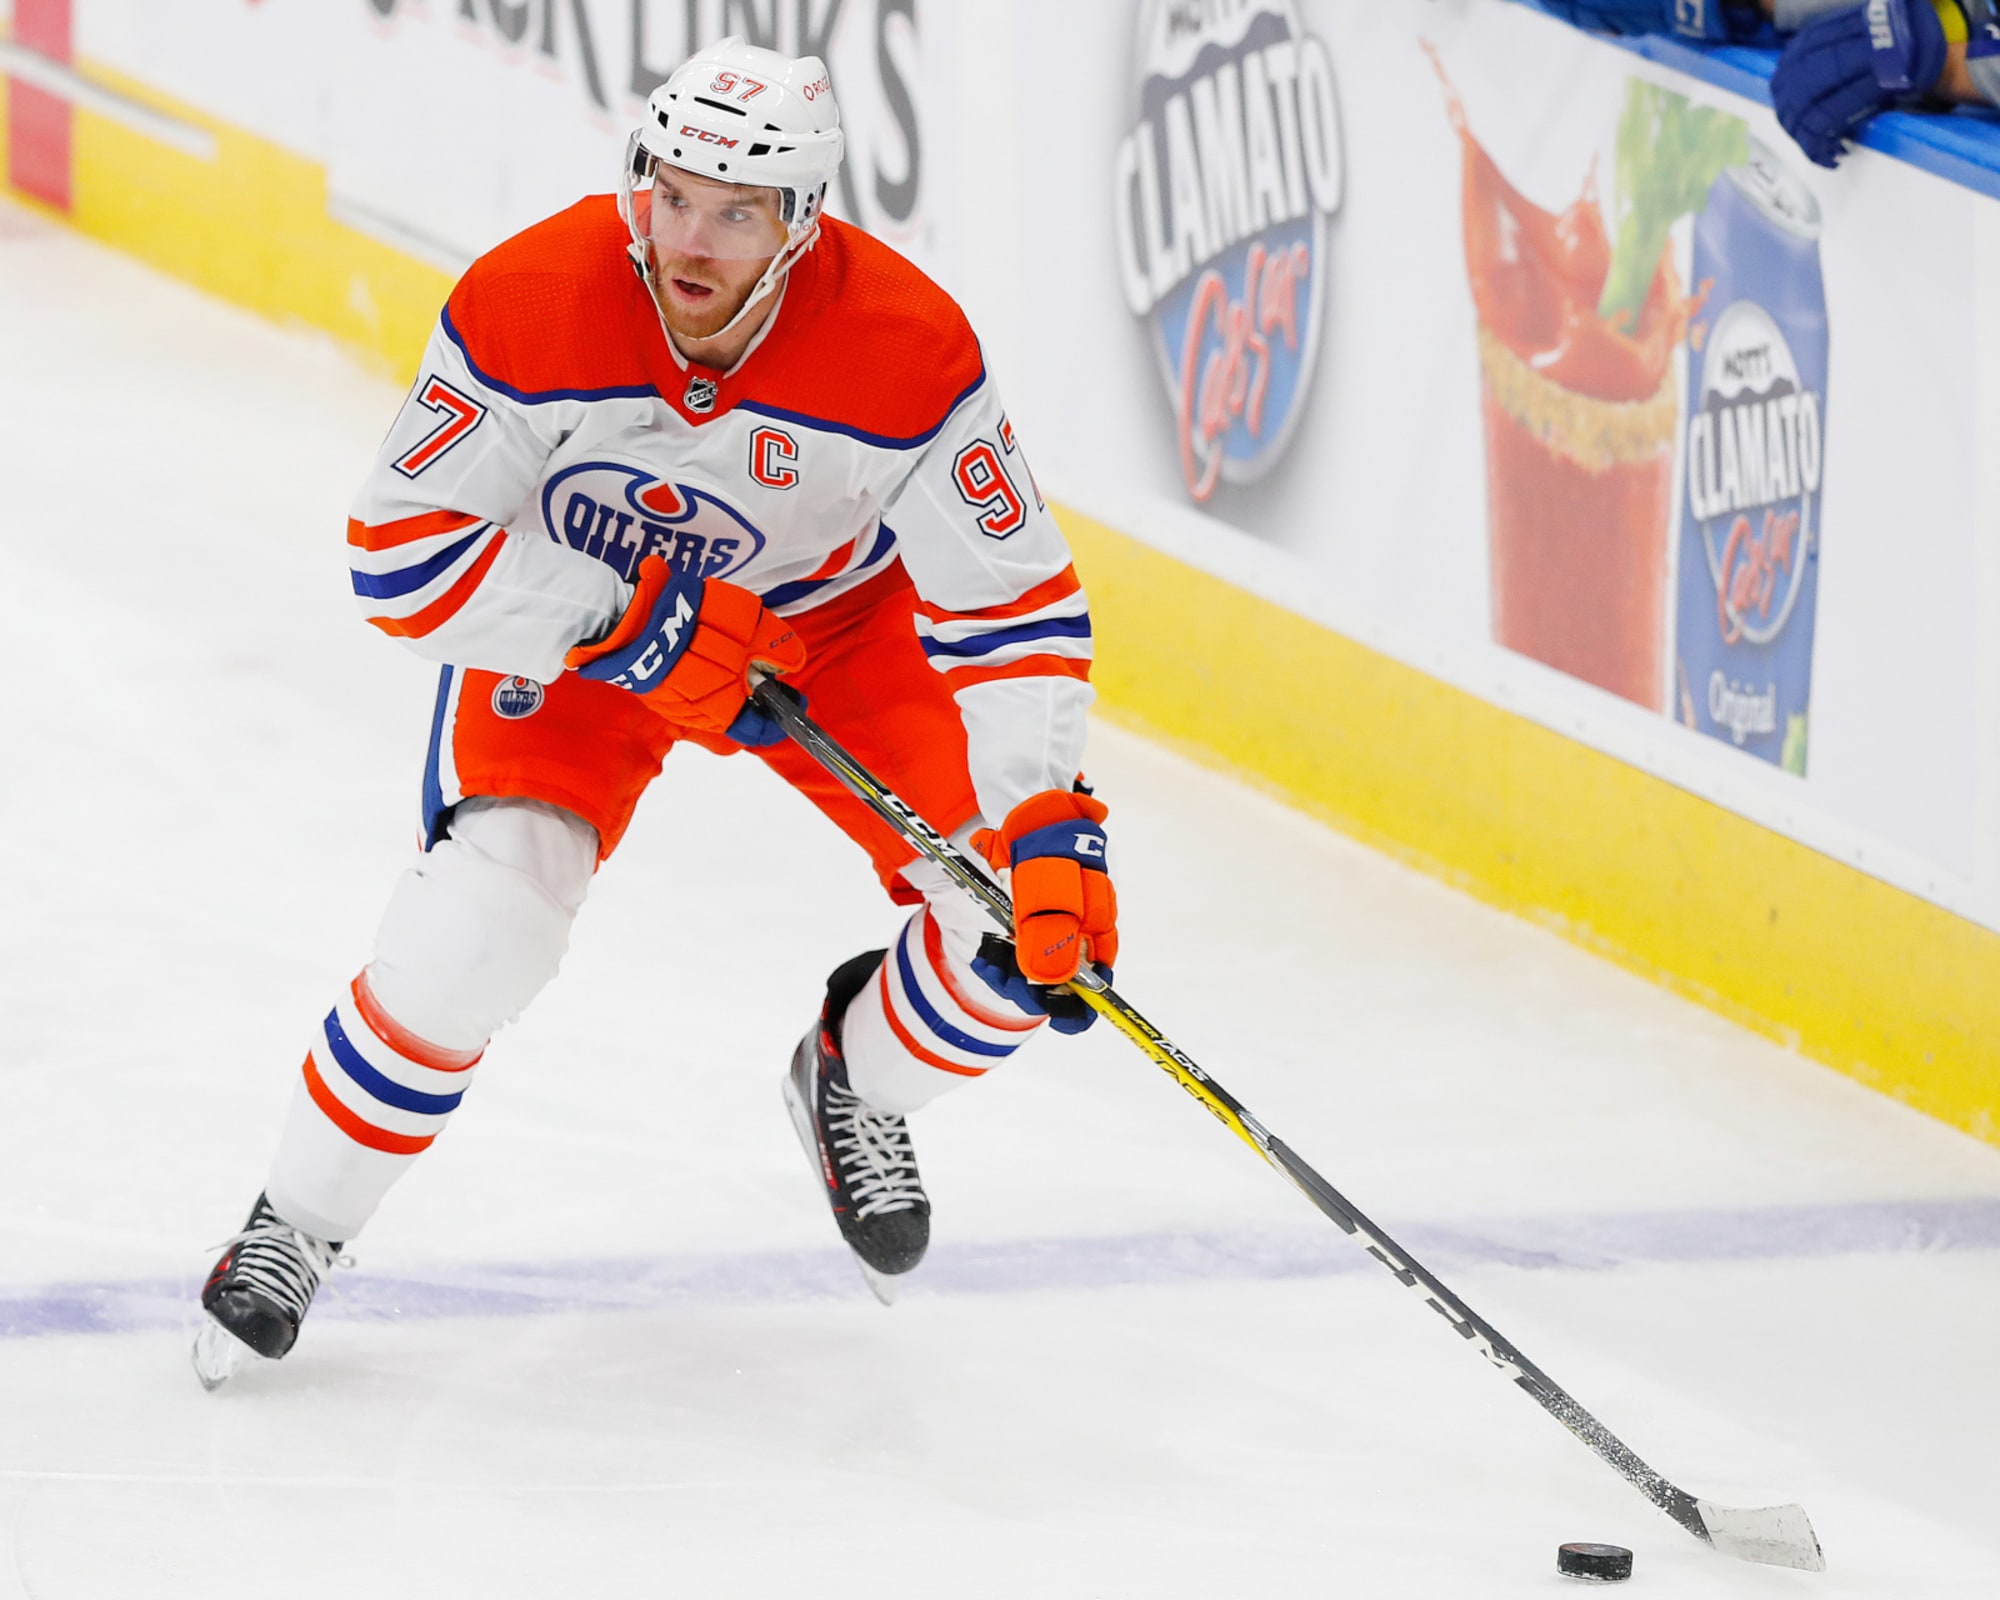 Edmonton Oilers 2021 season preview - More than the Connor McDavid